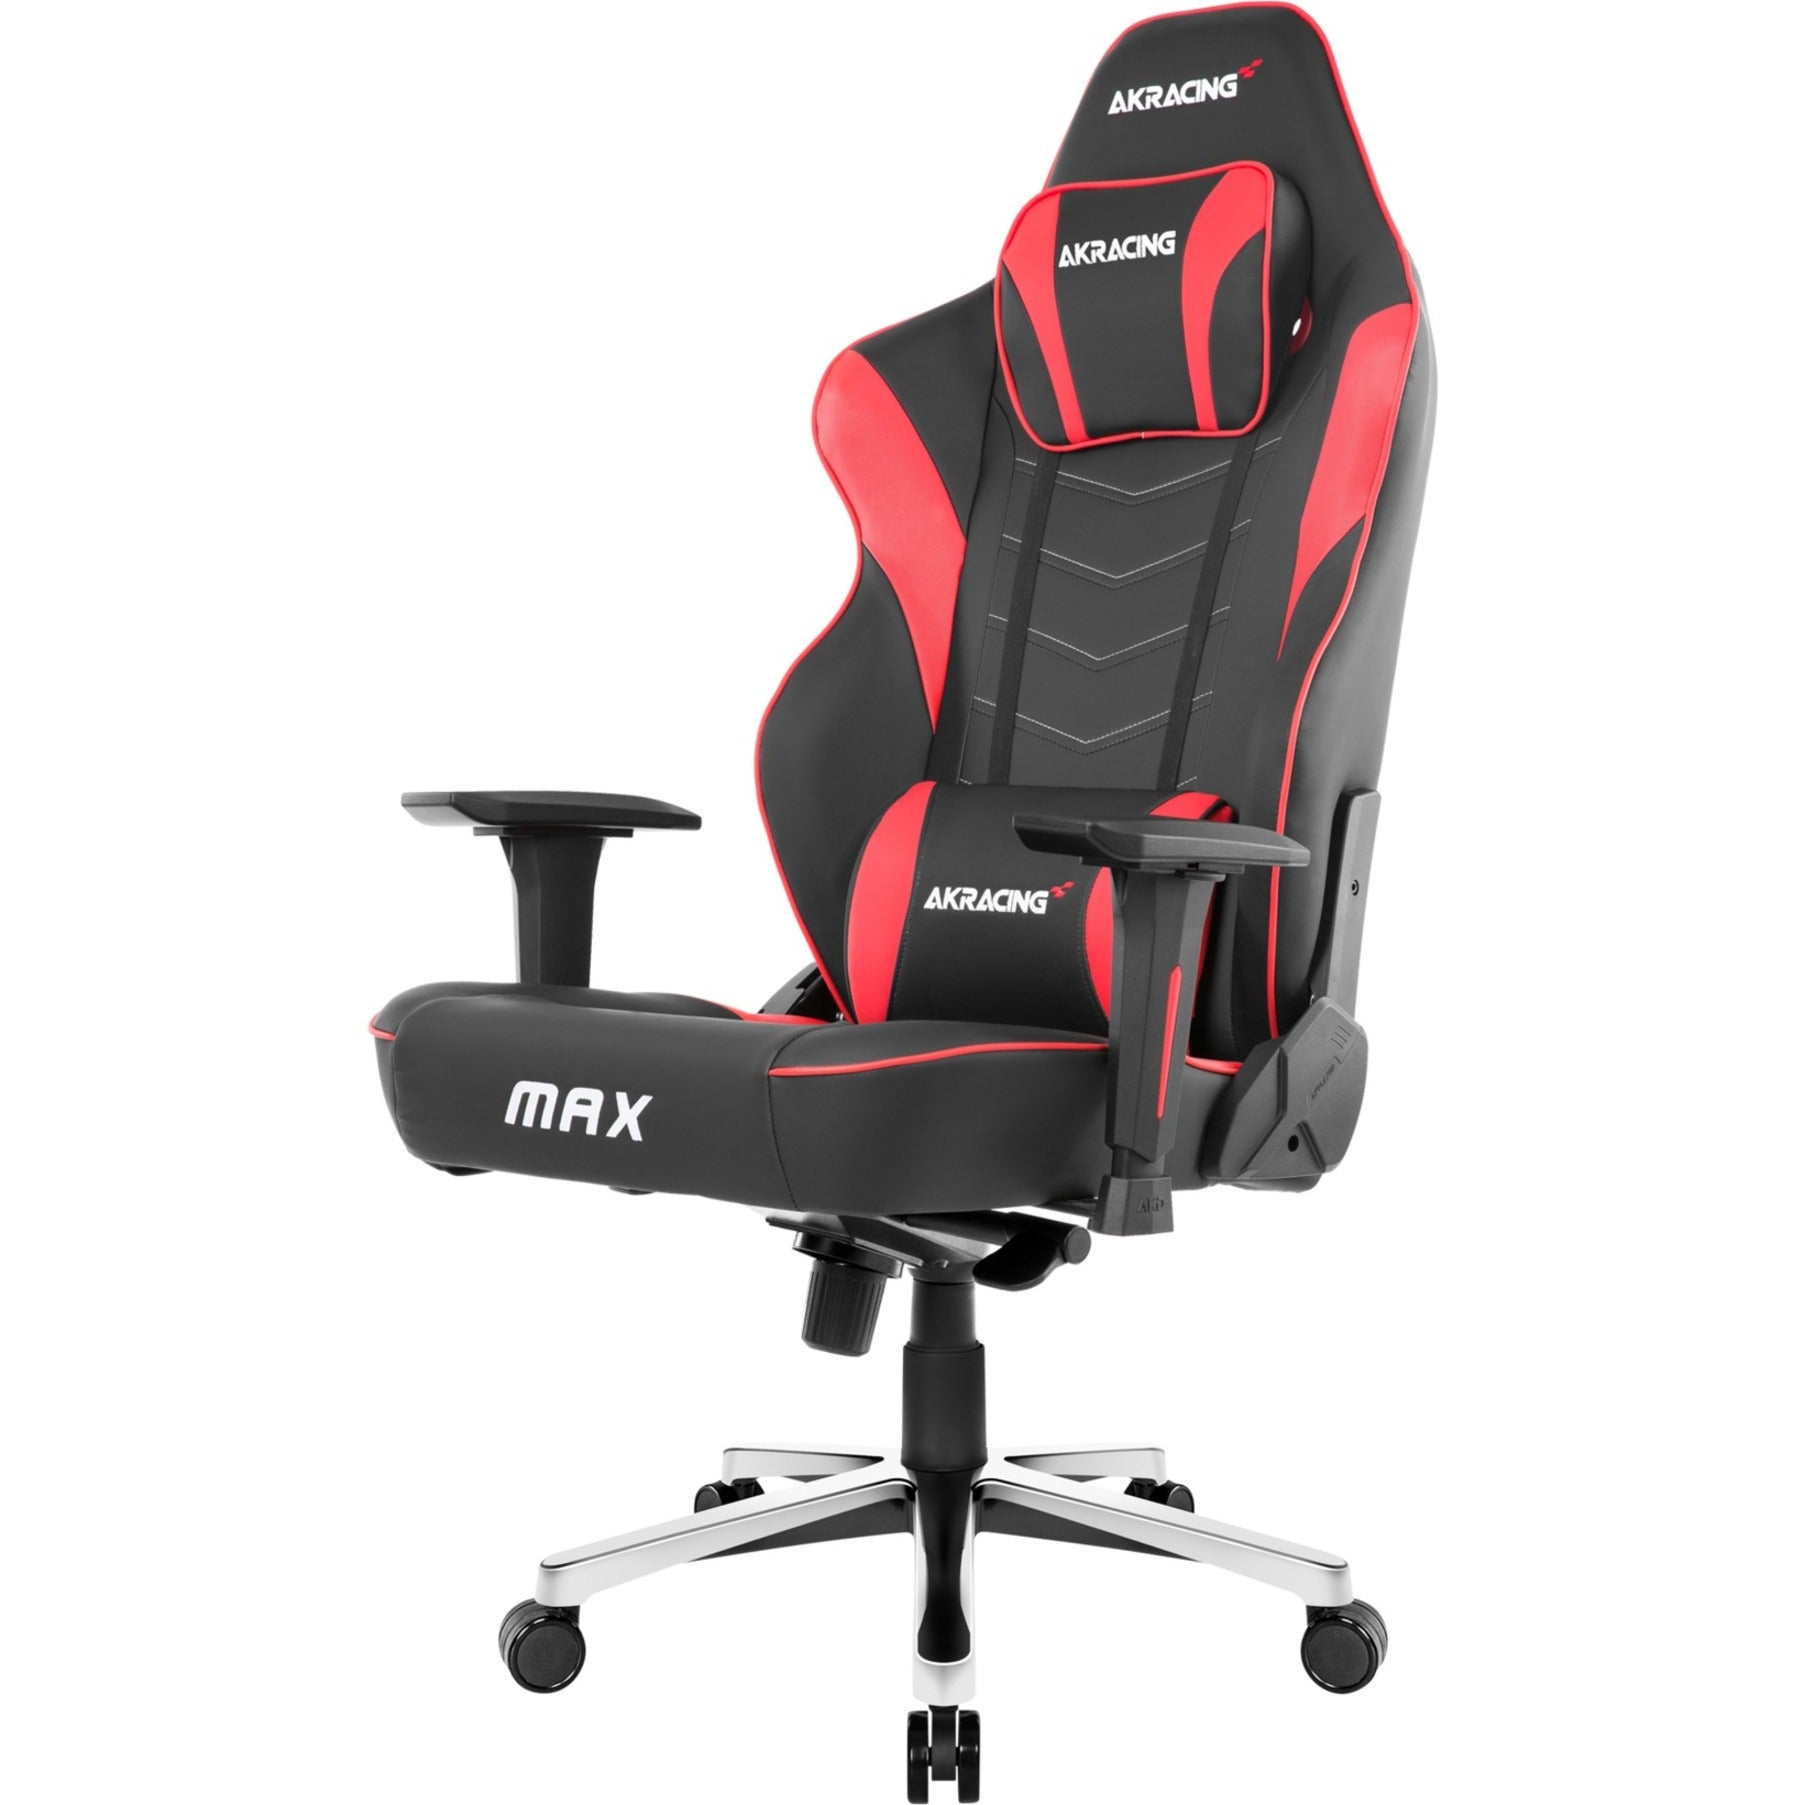 Max Series AKRacing Comfort Gaming Chair (AK-MAX-BK/RD)